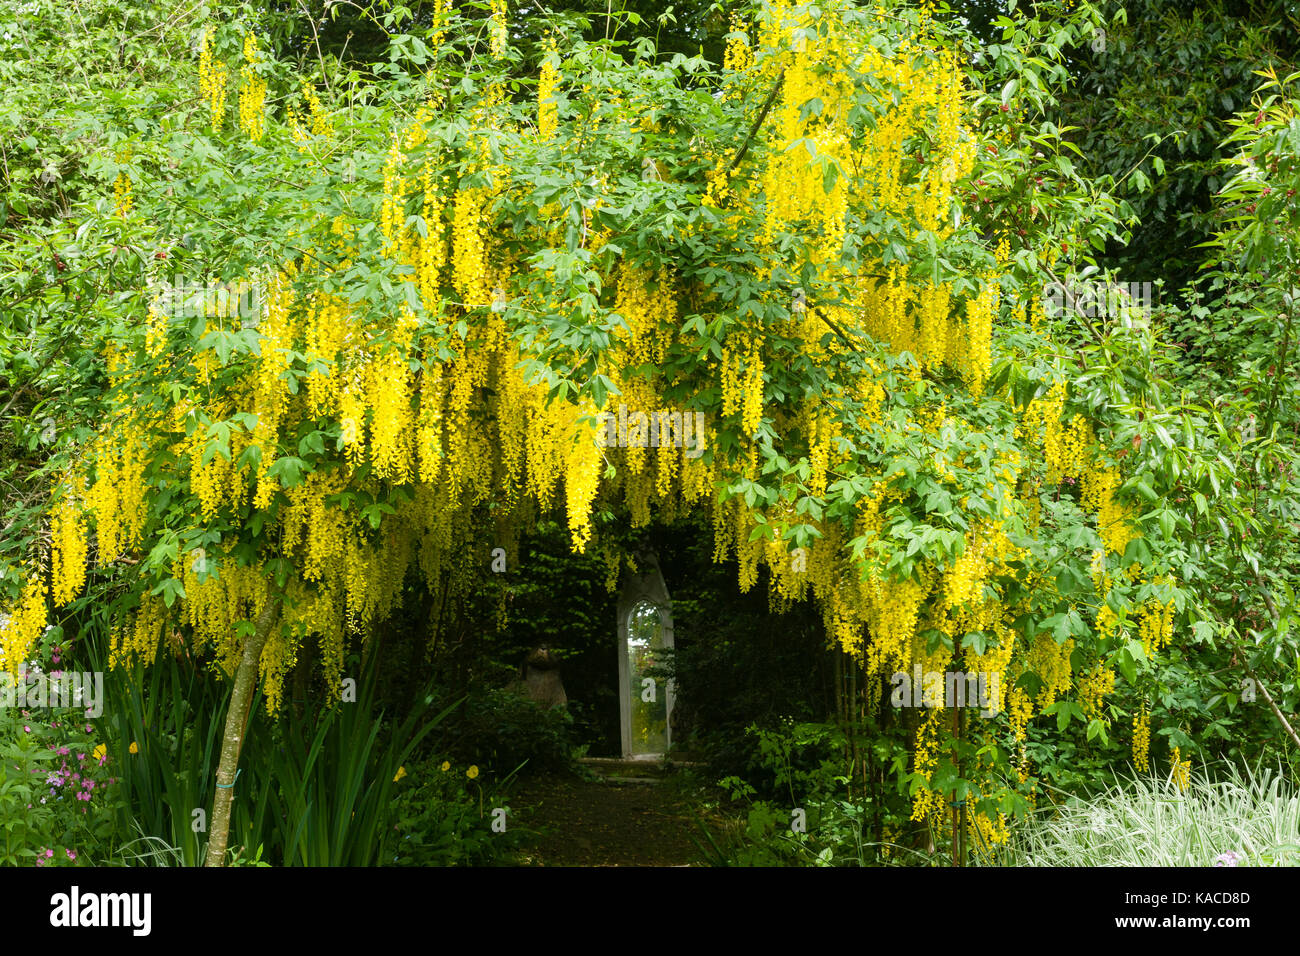 Laburnum tunnel with plants of Laburnum × watereri 'Vossii' trained over an archway in a Devon garden Stock Photo